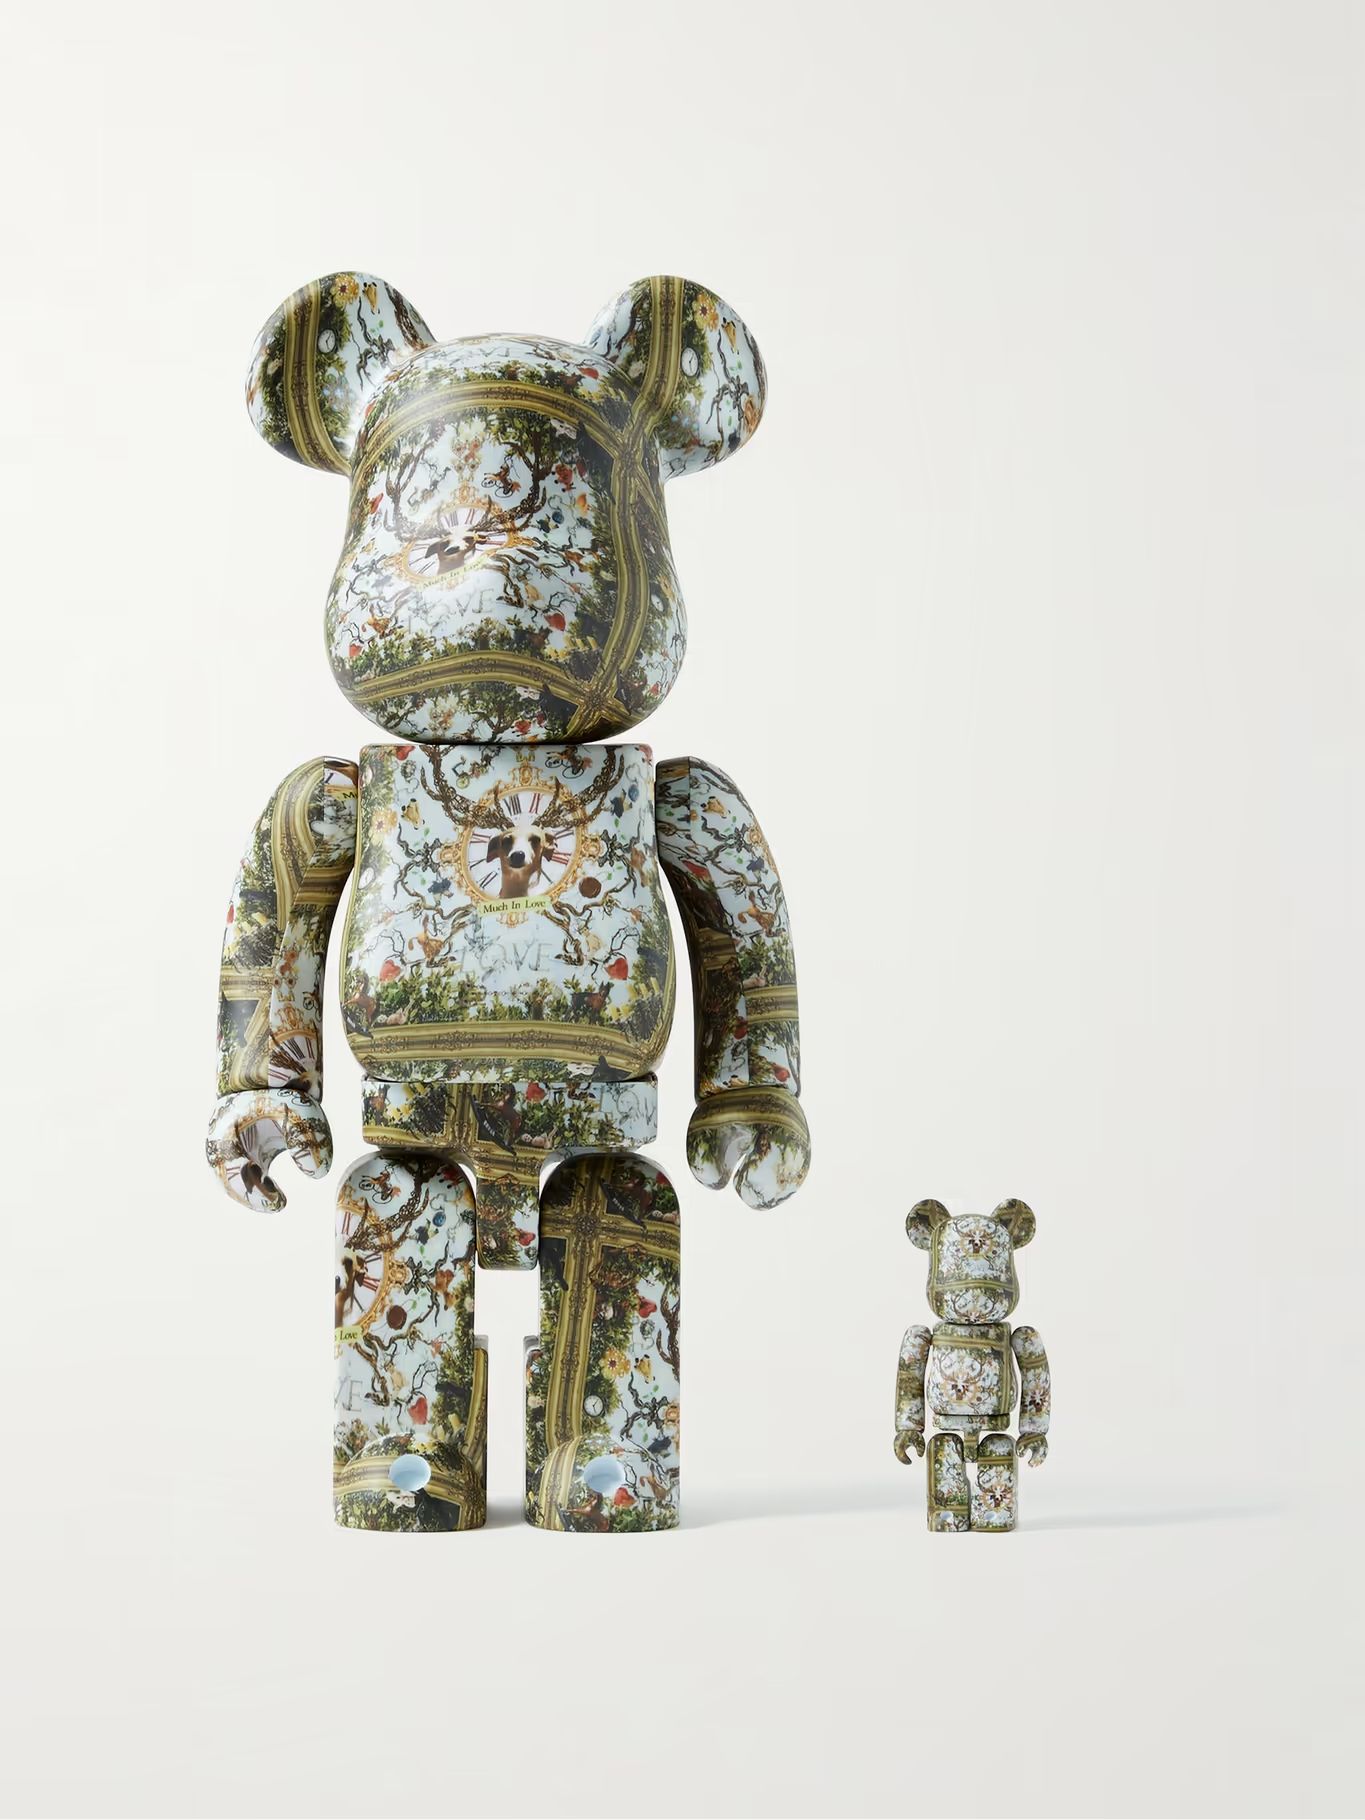 + Yuuki Ogura 100% + 400% Printed PVC Figurine Set | Mr Porter (US & CA)